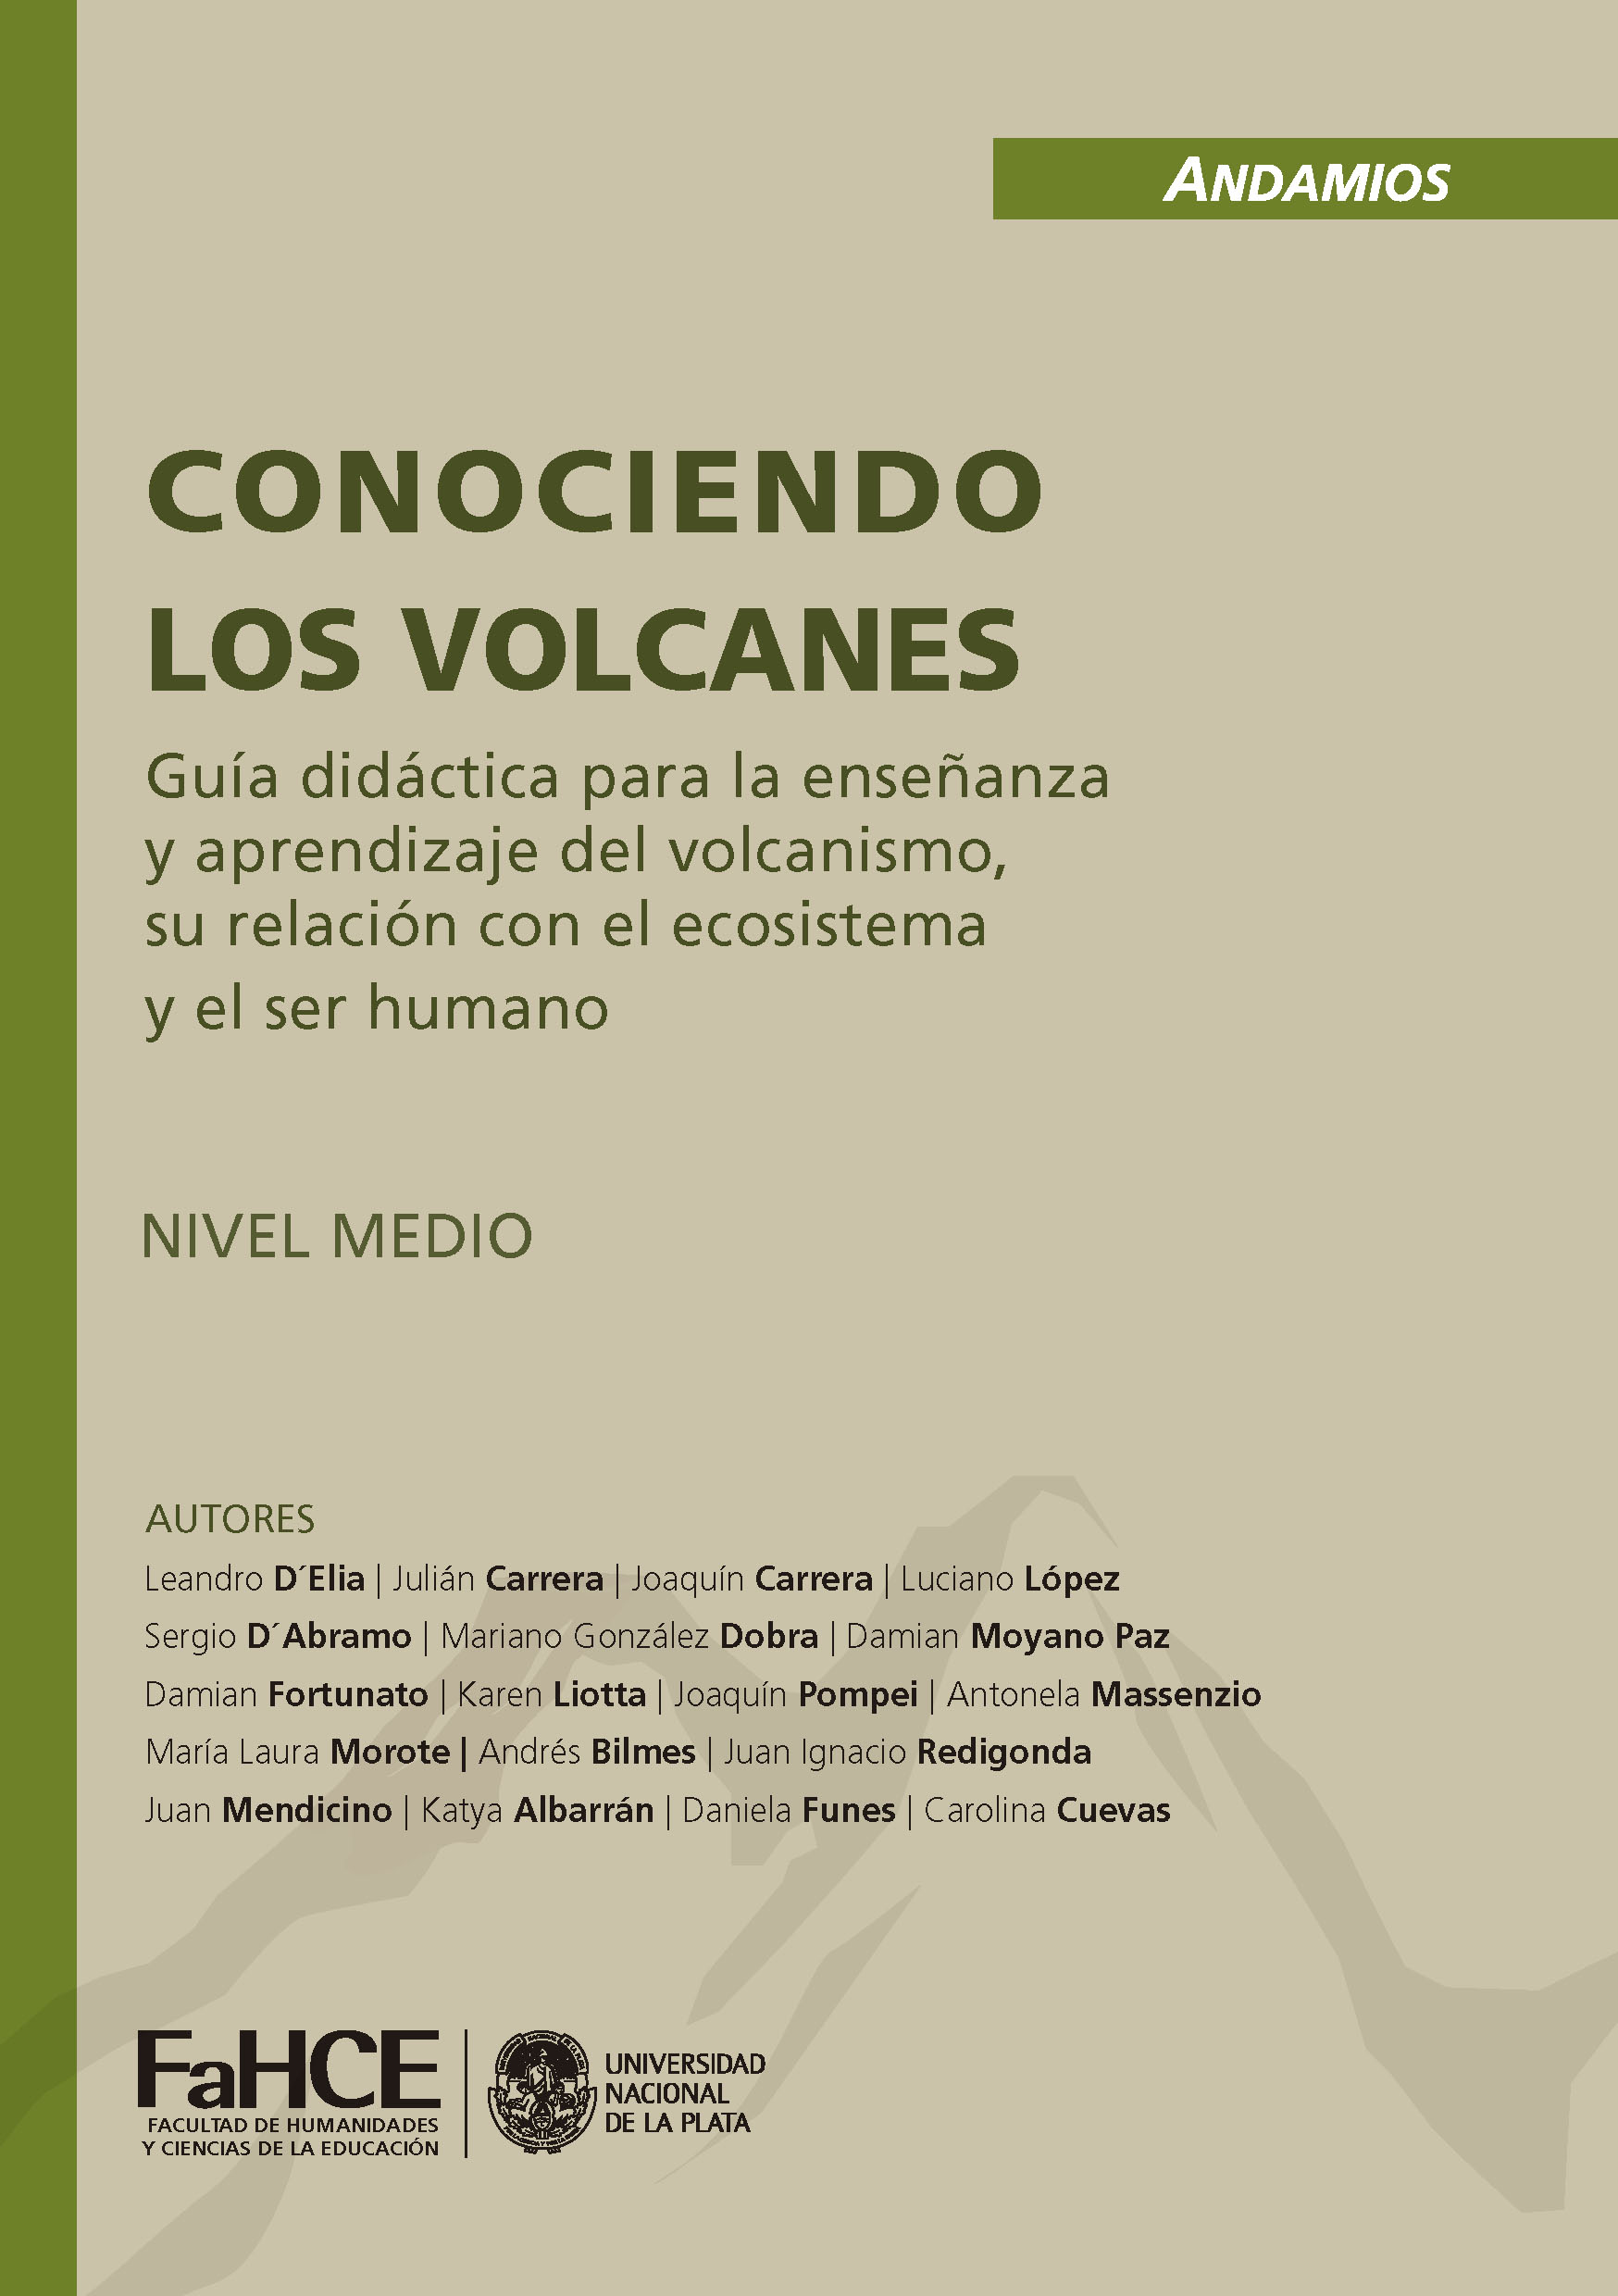 Imagen de portada del libro Conociendo los volcanes